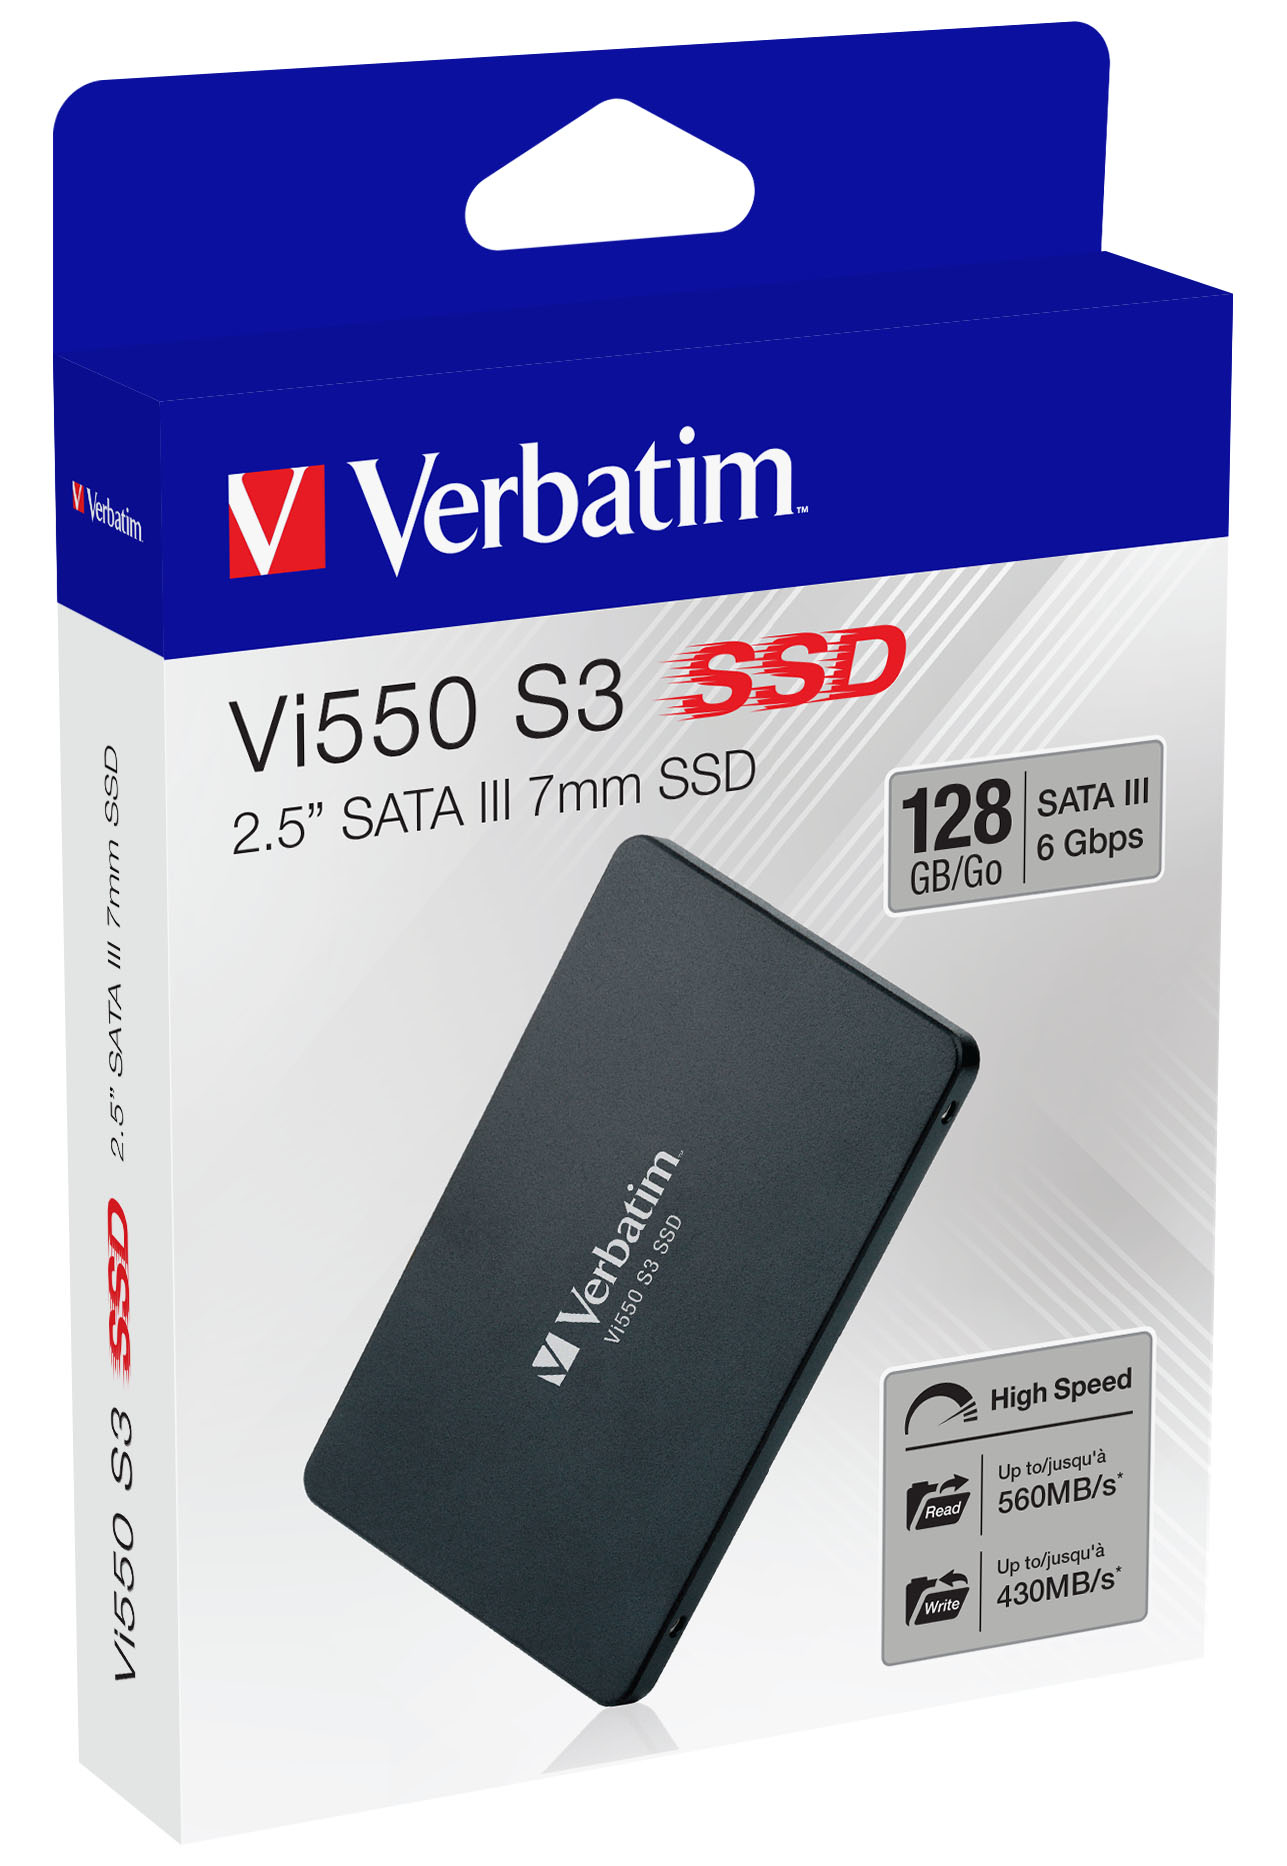 SSD 128GB VI550 S3 DA 2,5